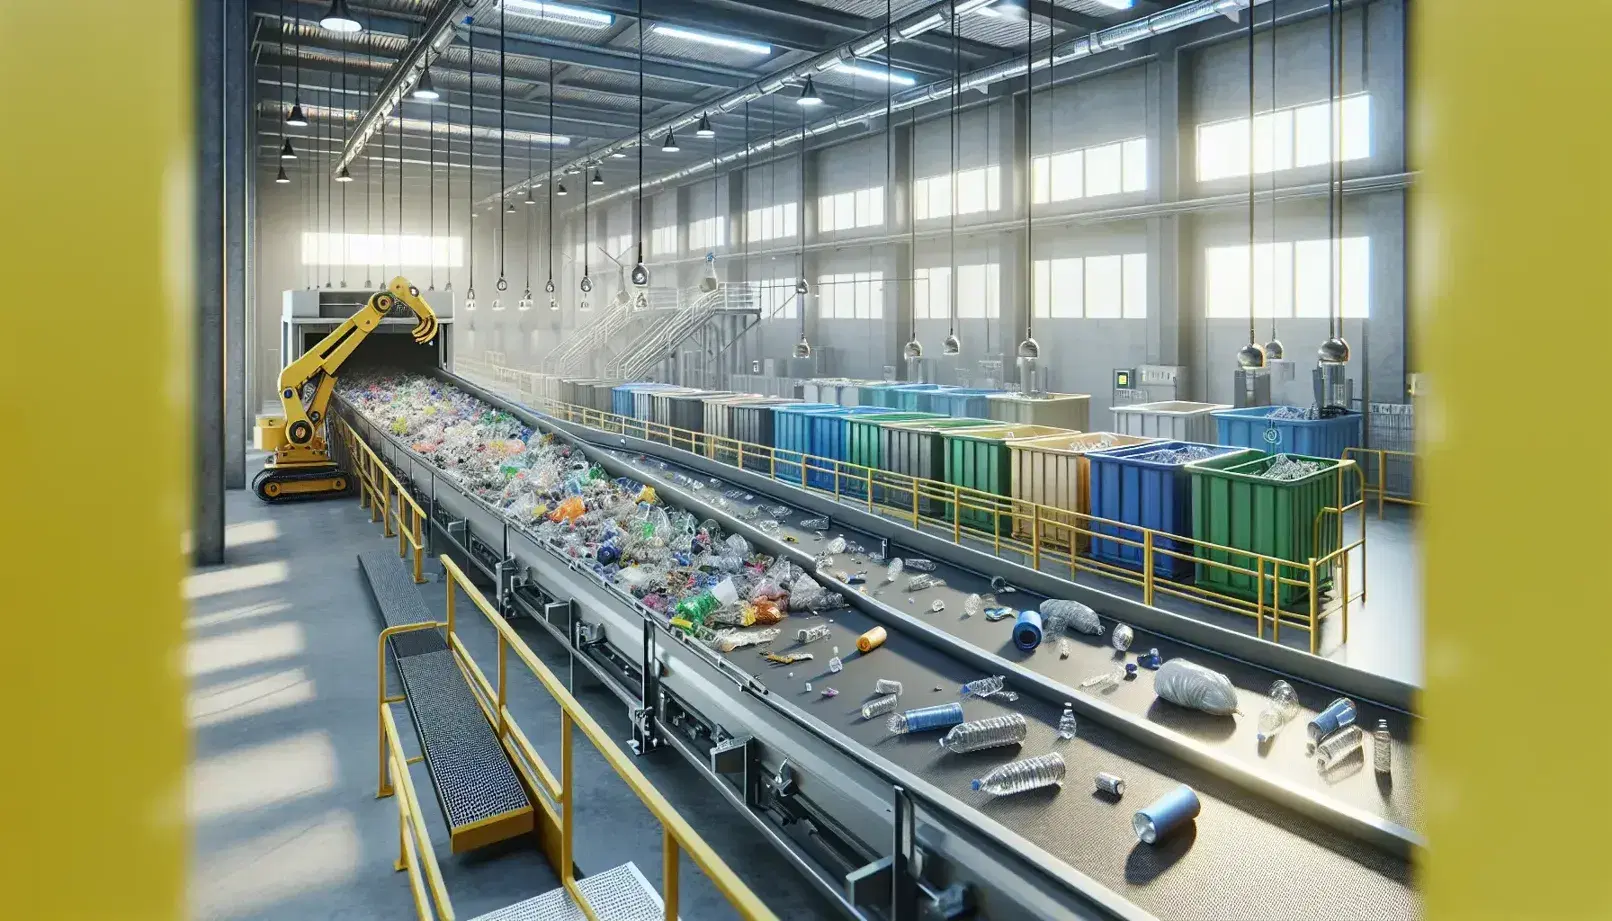 Impianto di riciclaggio moderno con nastro trasportatore, rifiuti separati, braccio meccanico giallo e contenitori colorati.